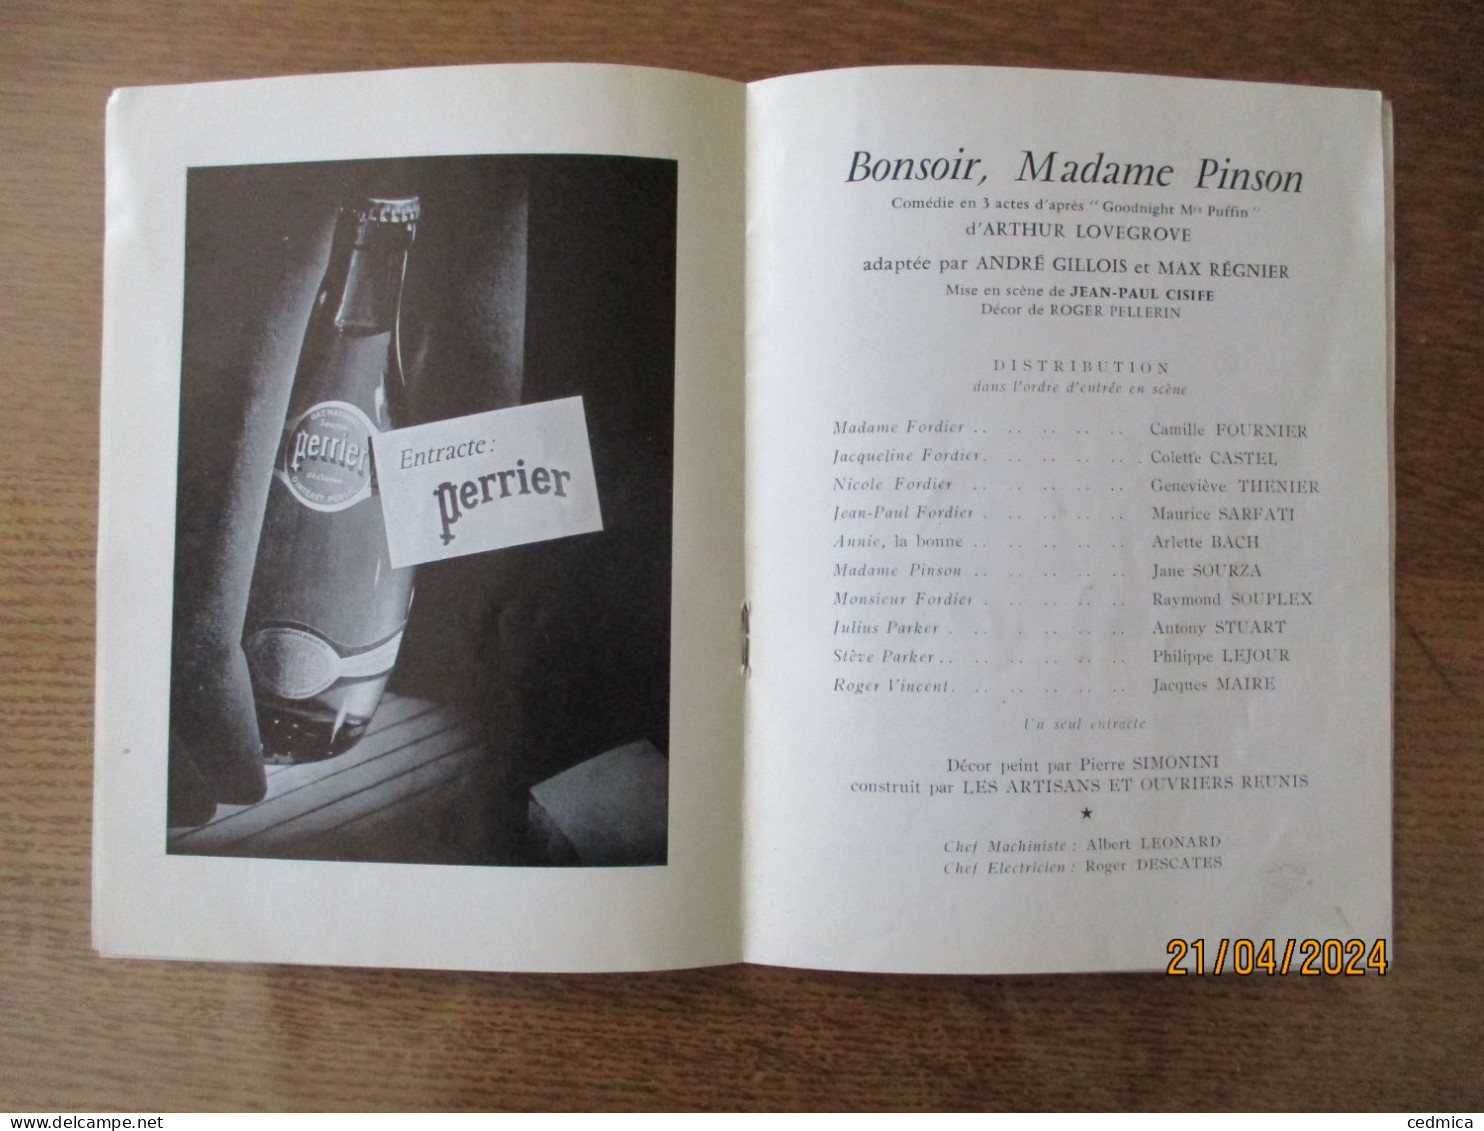 THEATRE DE LA PORTE St MARTIN SAISON 1963-1964 BONSOIR,MADAME PINSON - Programme